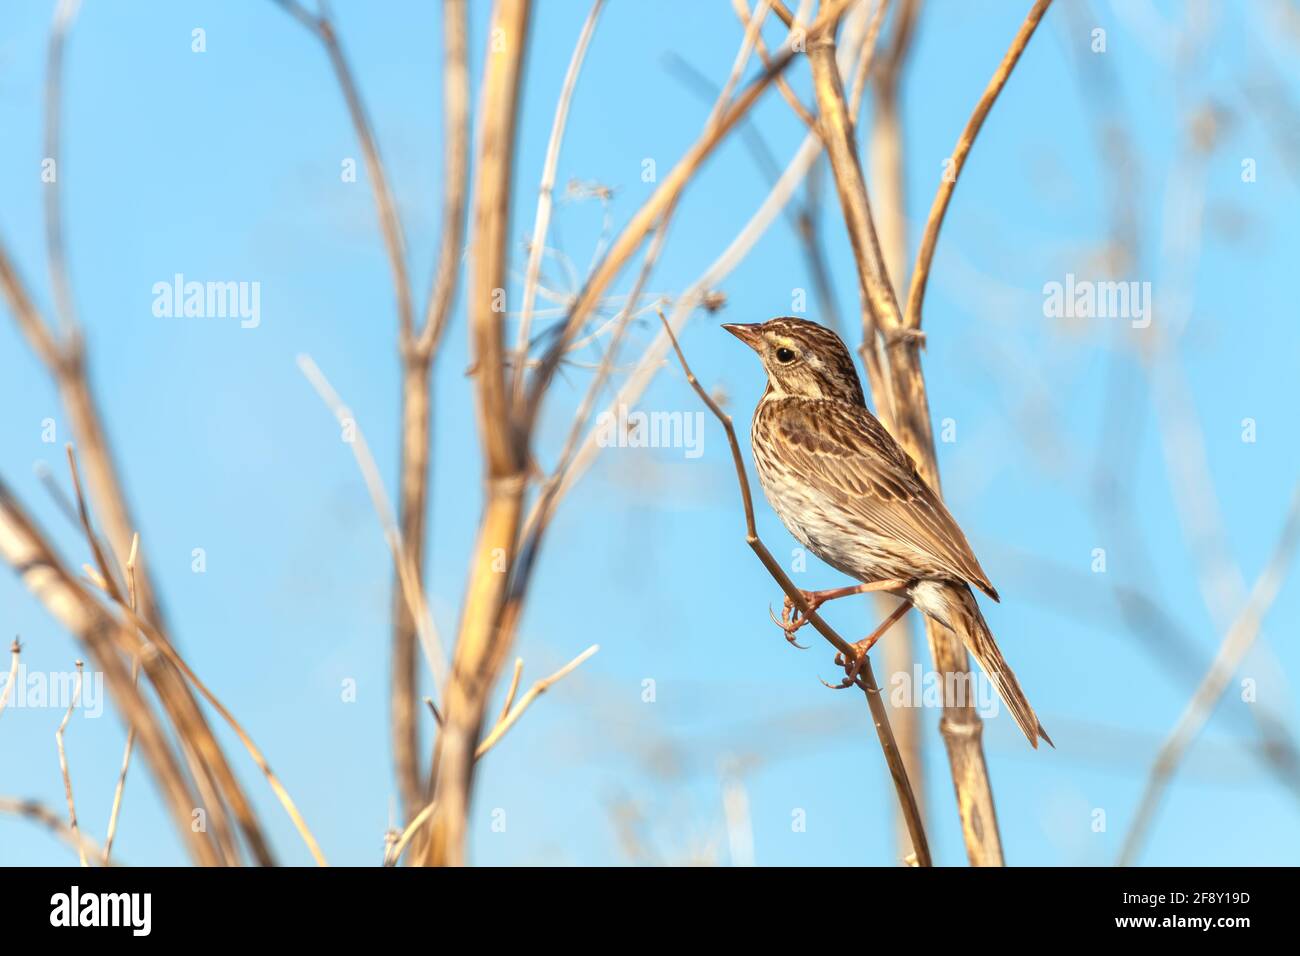 Sparrow de Savannah (Passerculus sandichensis), réserve naturelle nationale de Sacramento, Californie, États-Unis. Banque D'Images